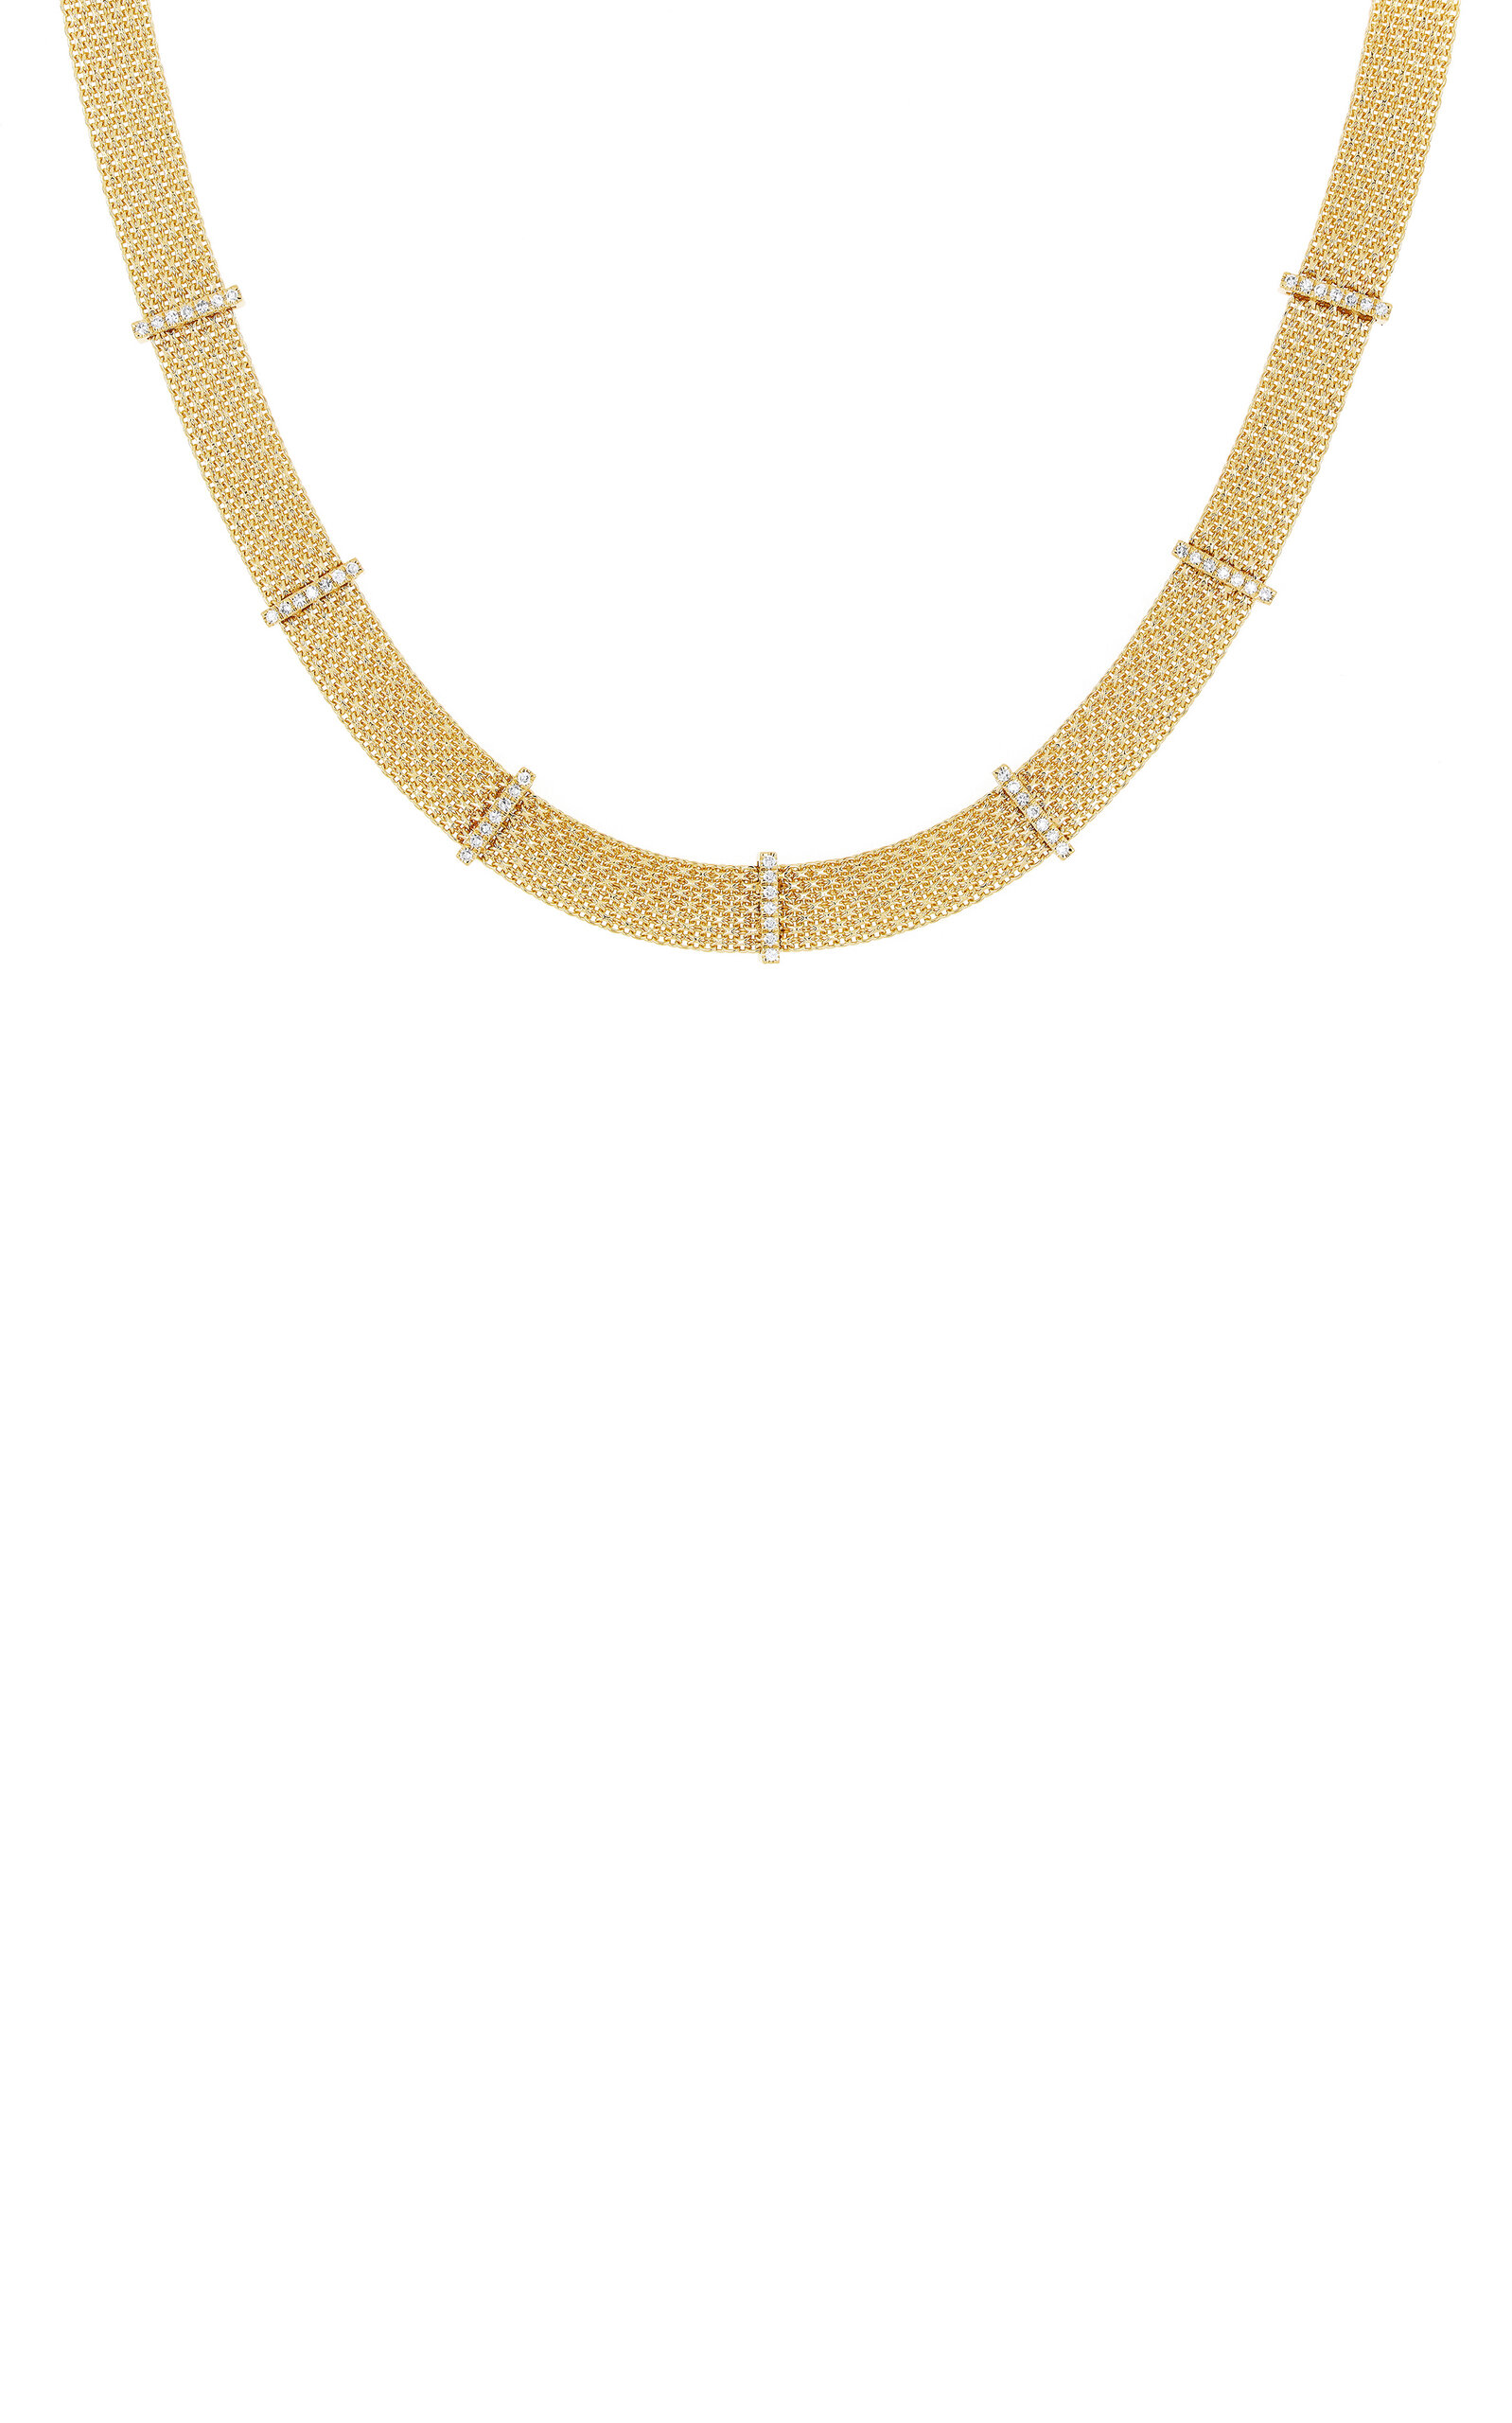 14K Gold Diamond Necklace